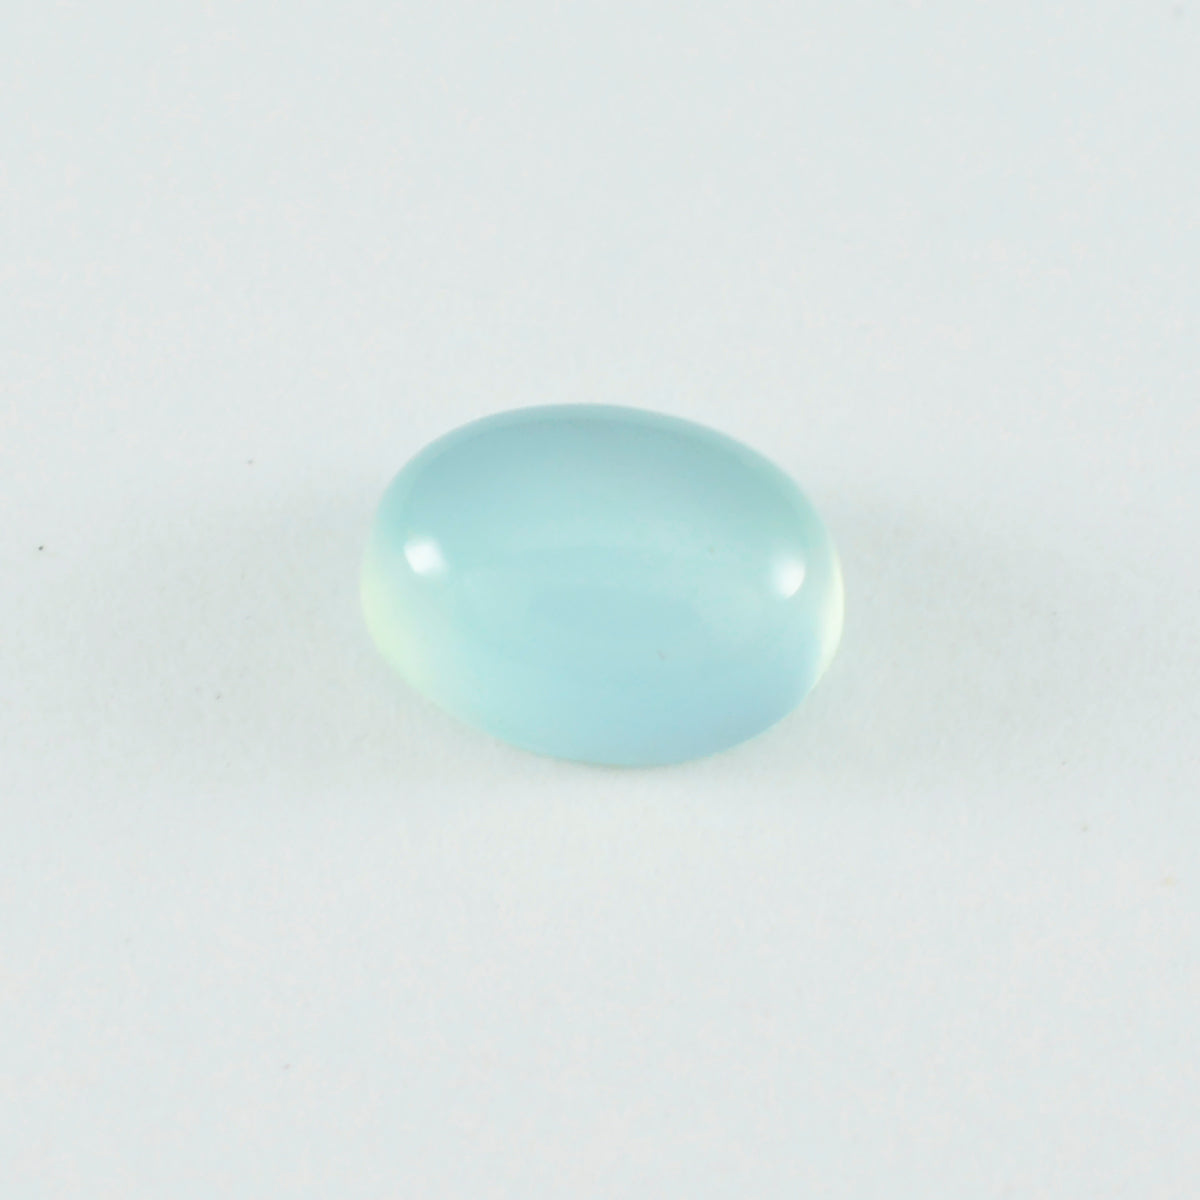 Riyogems 1pc aqua calcédoine cabochon 5x7 mm forme ovale belle qualité gemme